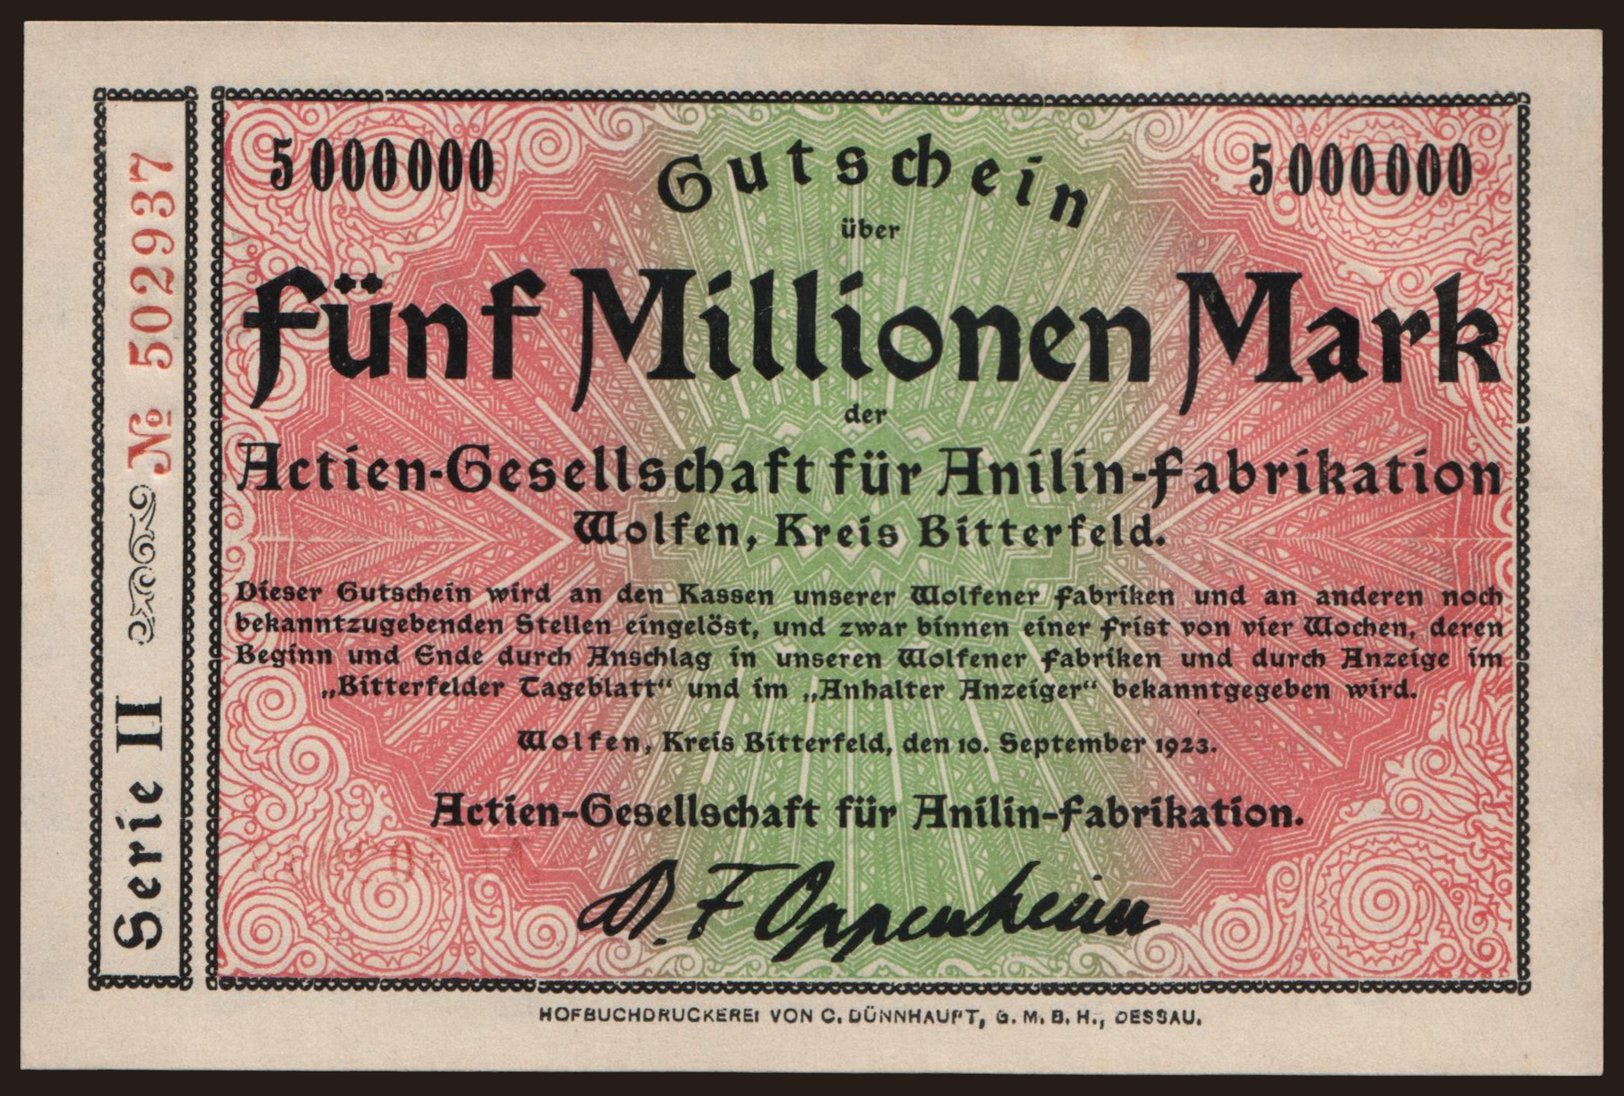 Wolfen/ Actien-Gesellschaft für Anilin-Fabrikation, 5.000.000 Mark, 1923